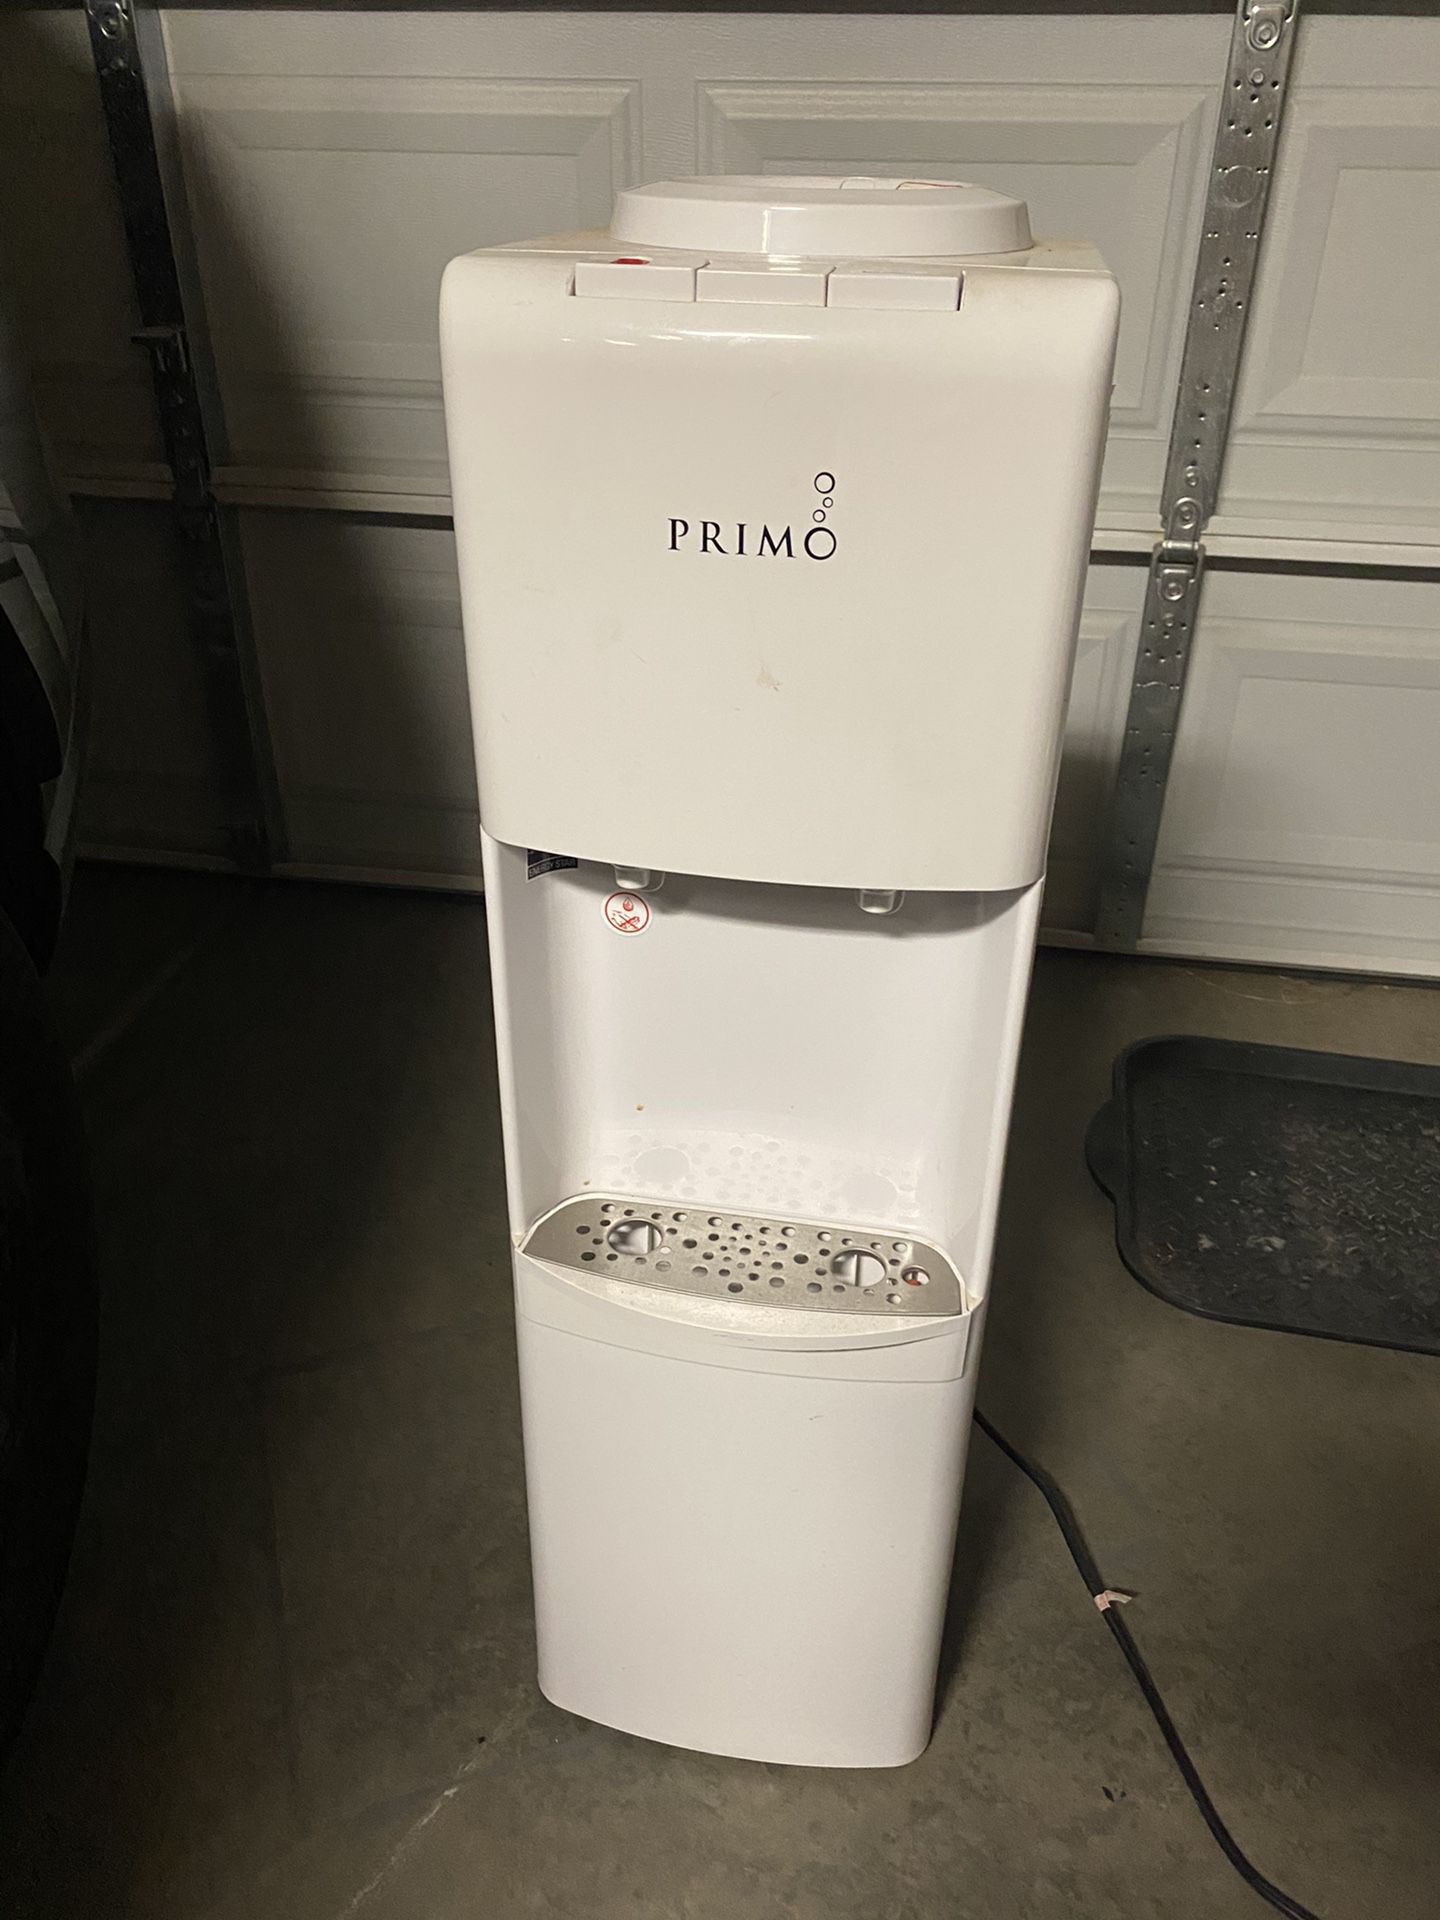  Water dispenser $50